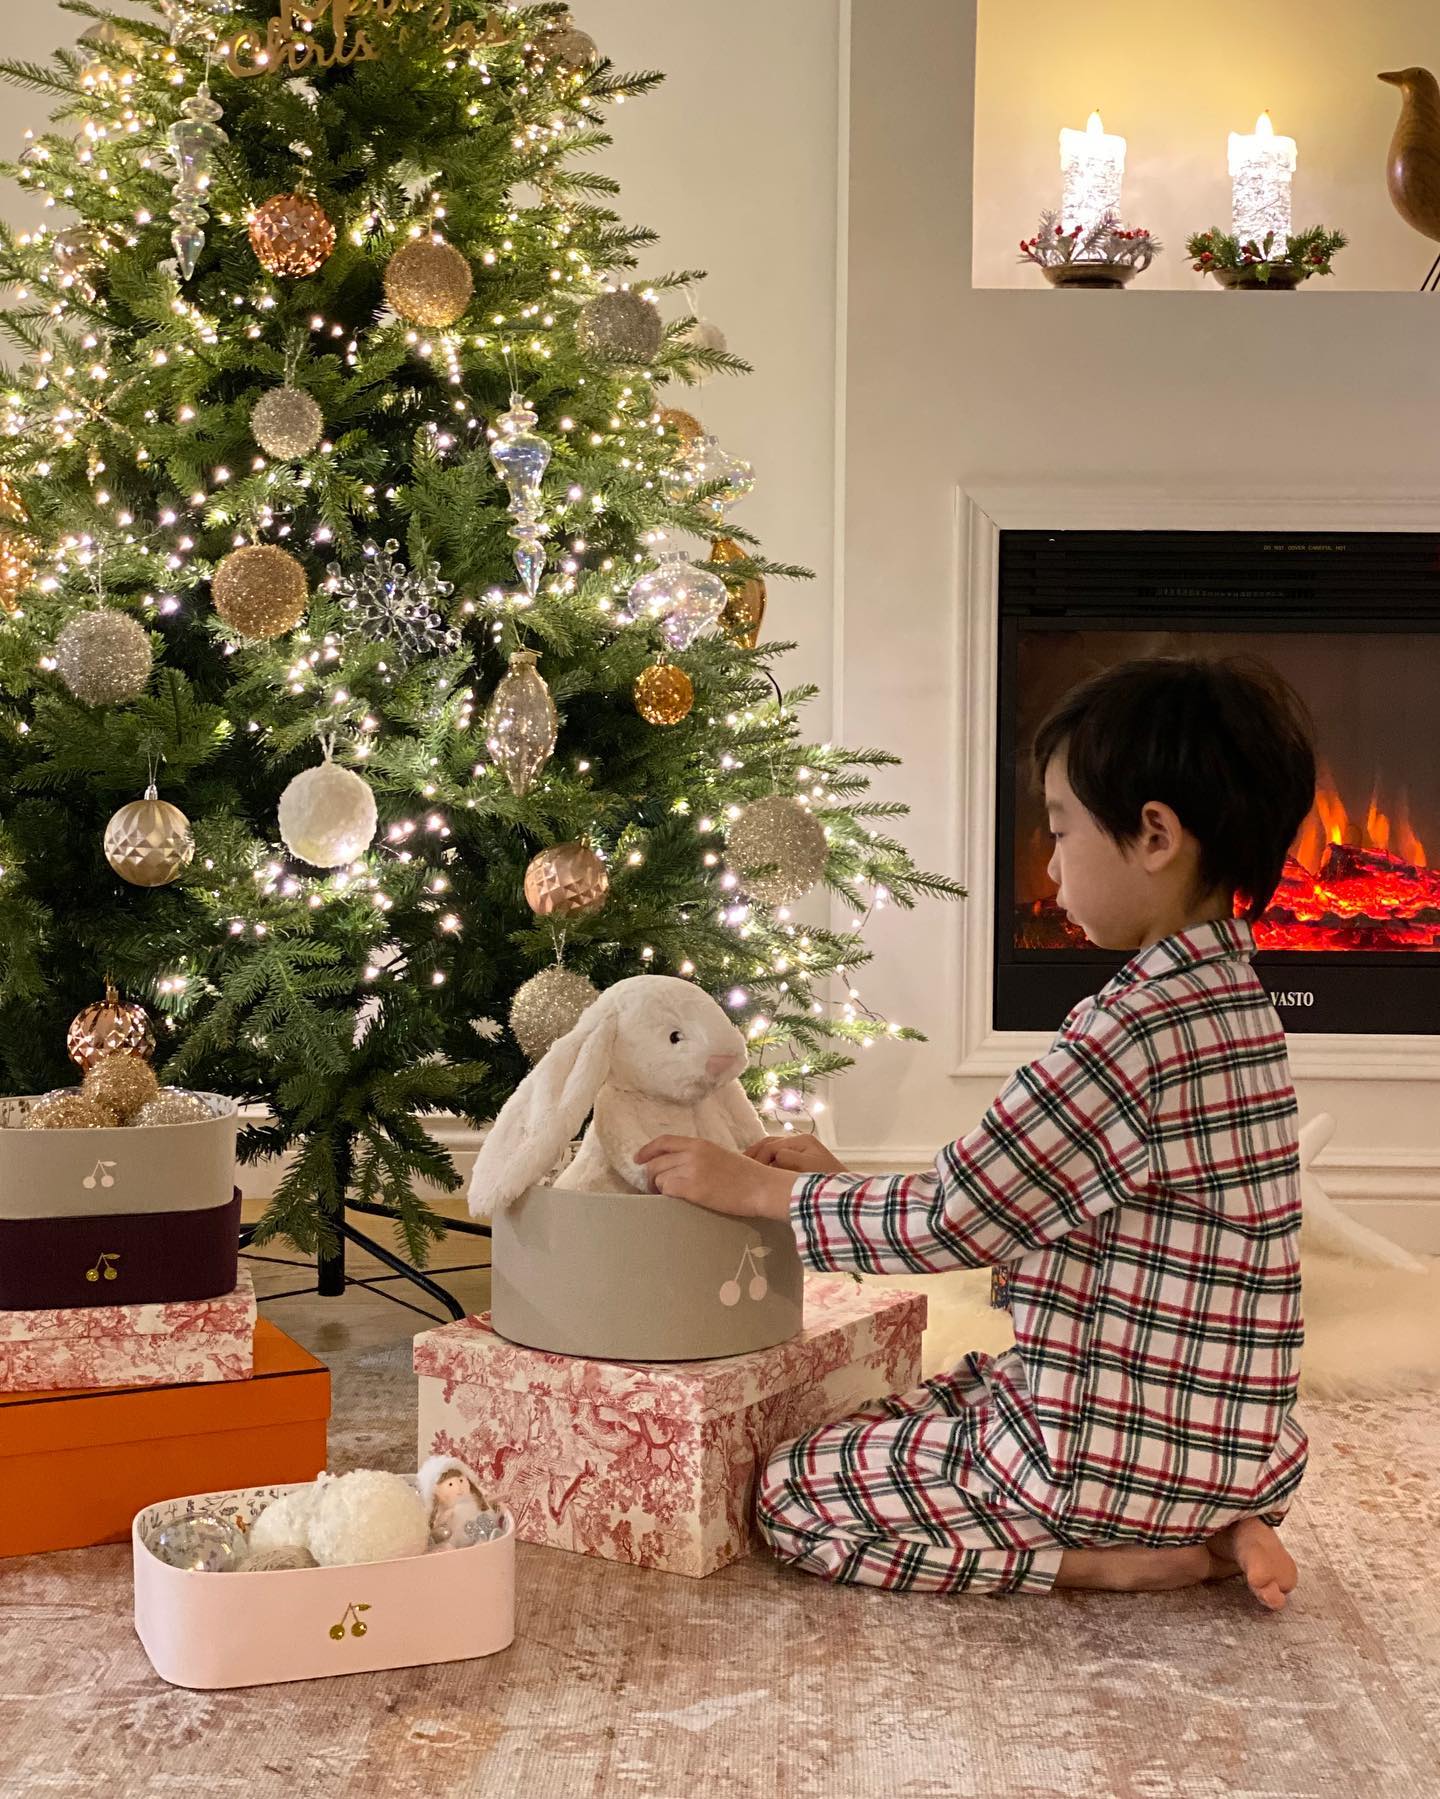 설레는 마음으로 산타 할아버지 선물을 열어보는 것 같은 또띠. 시기에 맞춰 판매했던 제품은 노아바 크리스마스 트리 & 마르마르 바스켓.